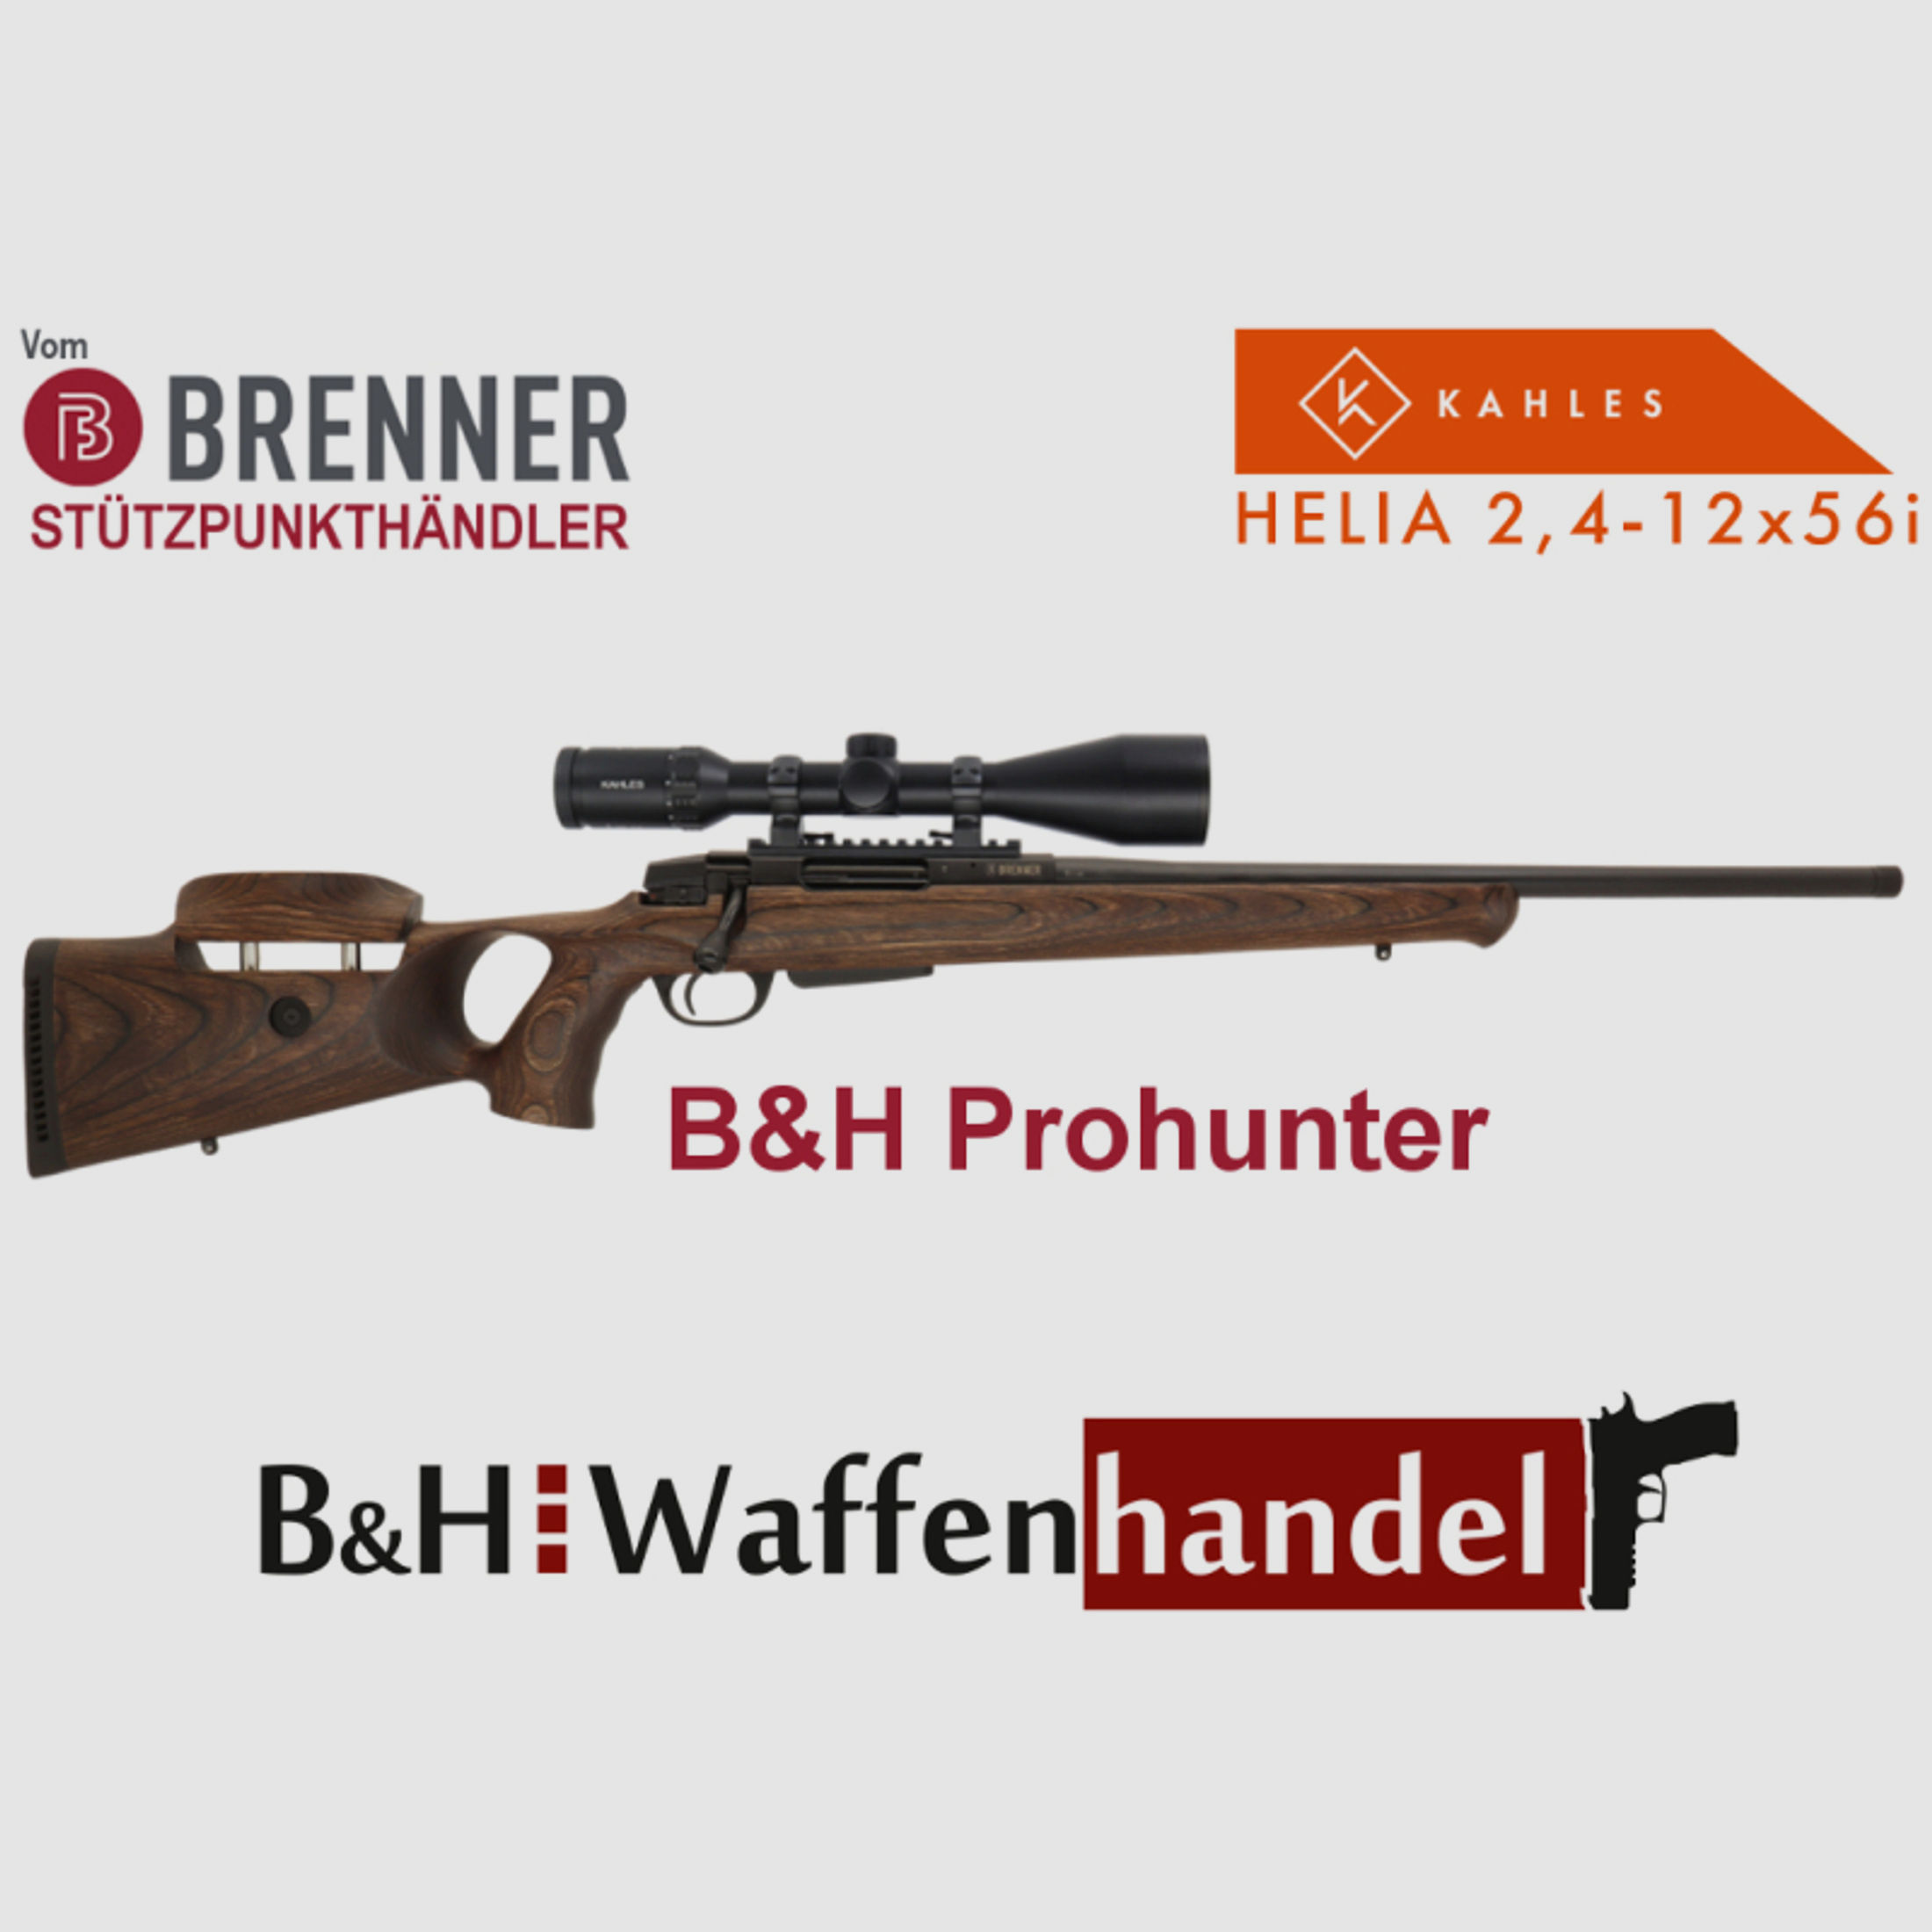 Komplettpaket: Brenner BR20 B&H Prohunter Lochschaft mit Kahles Helia 2.4-12x56 fertig montiert